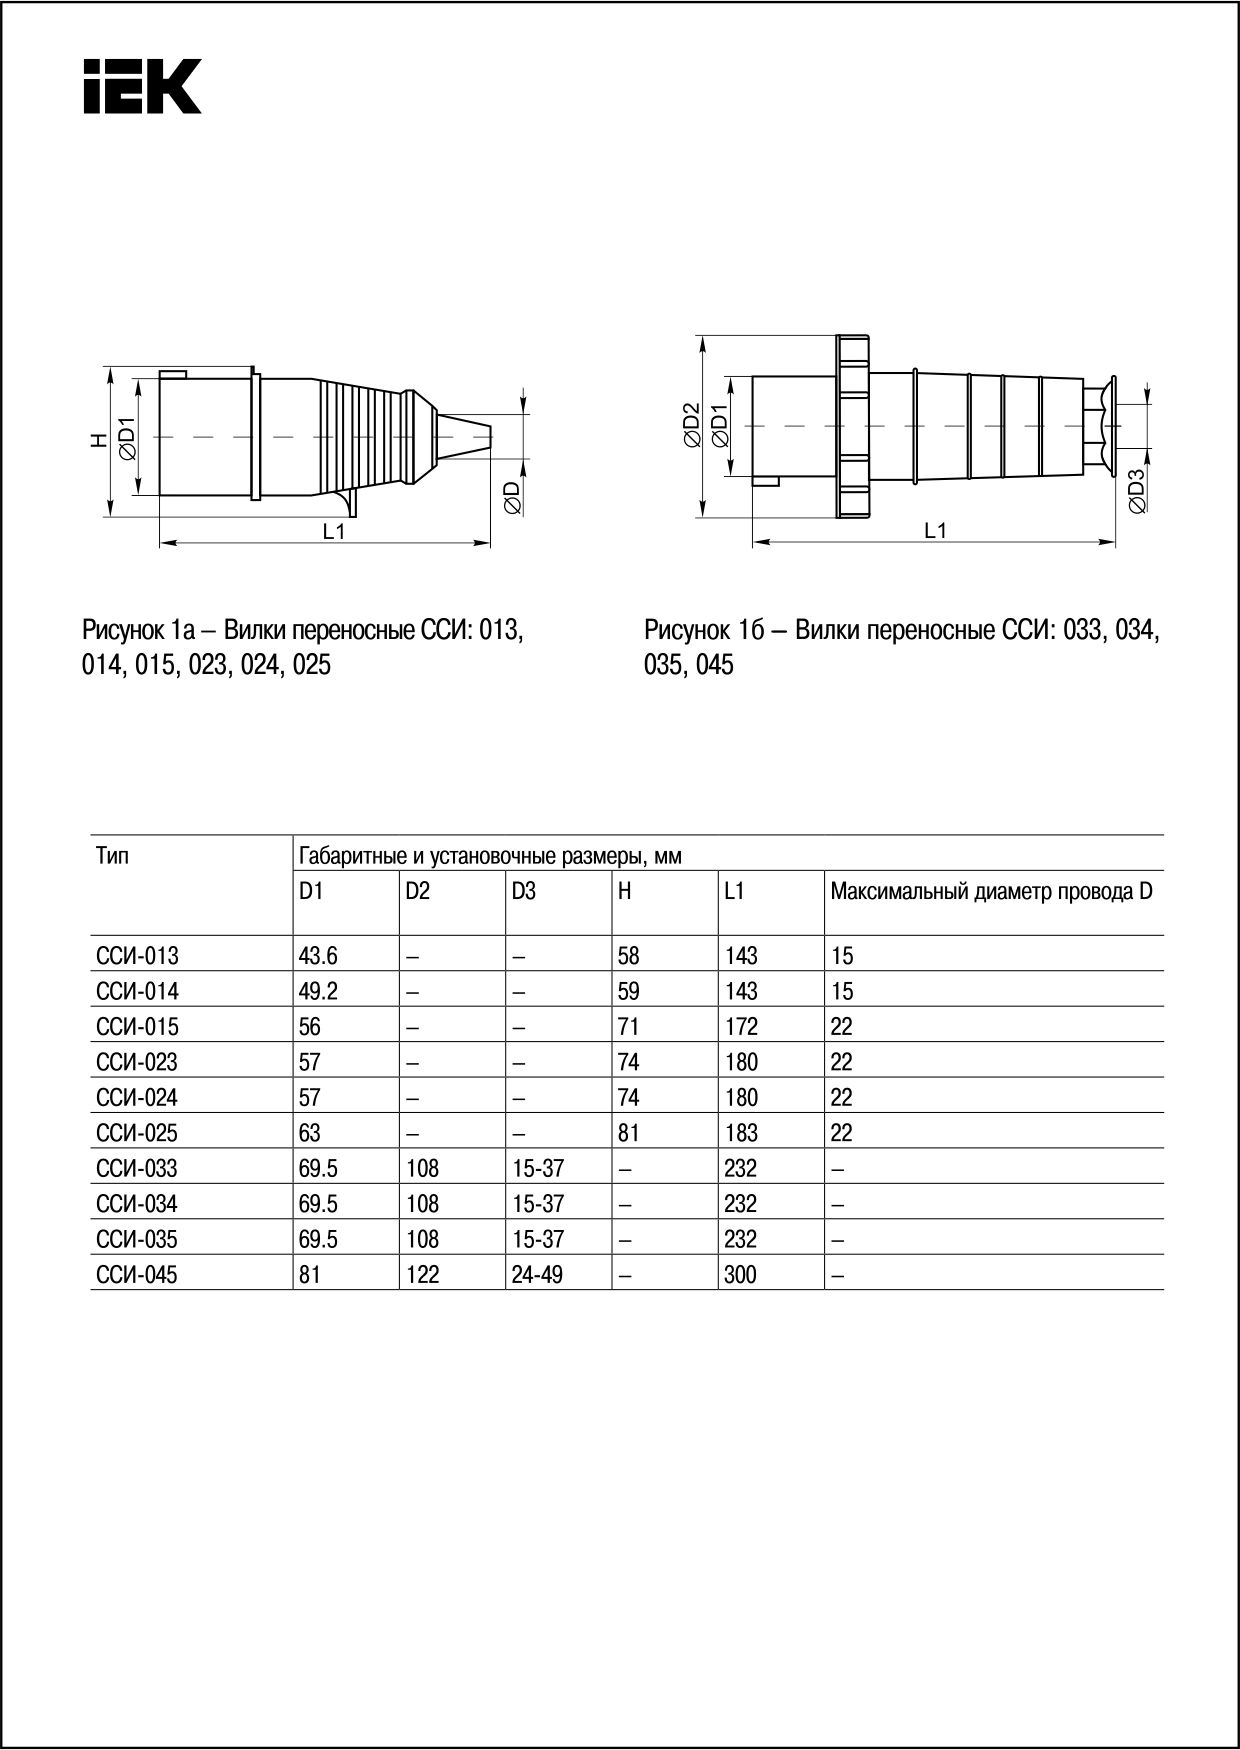 Вилка переносная ССИ-023 2P+PE 32А 200-250В IP44 IEK по цене 401 руб. в .